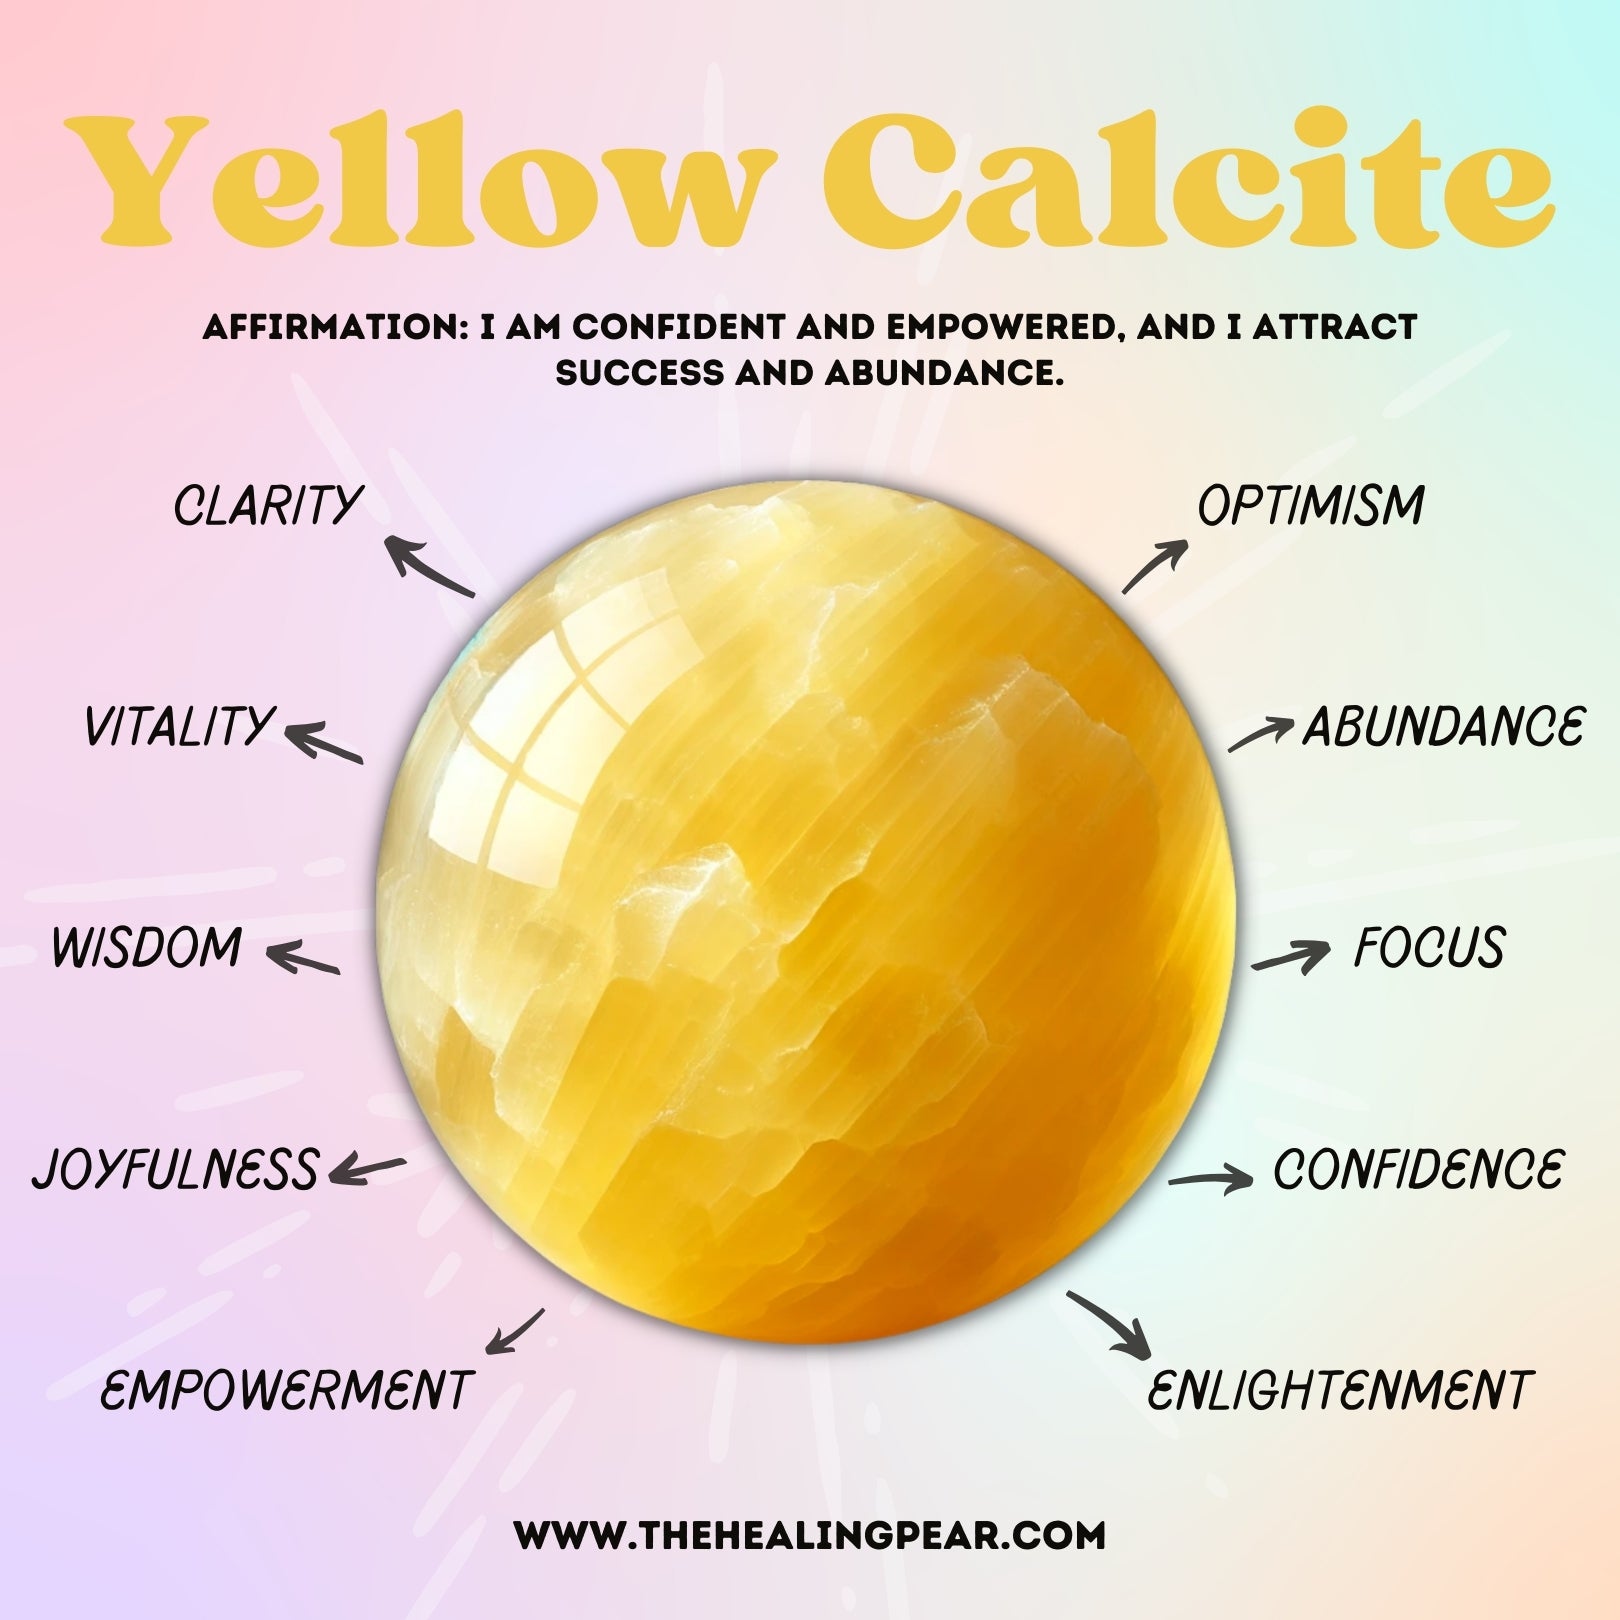 Yellow Calcite Properties